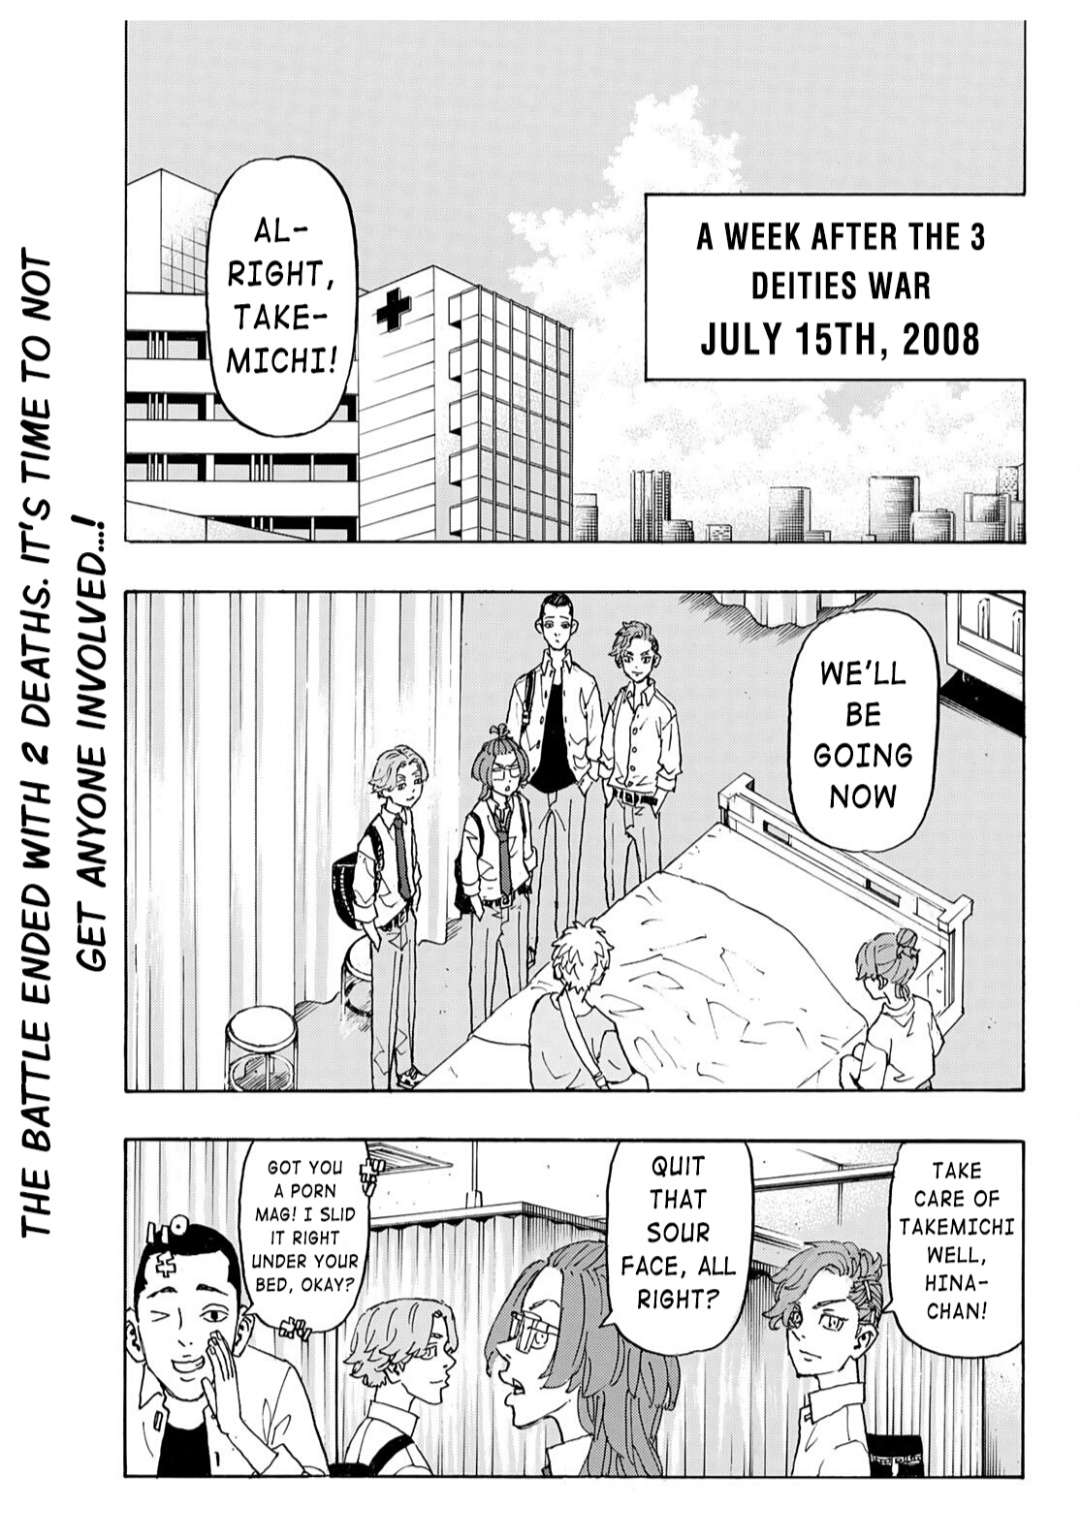 Tokyo revengers manga chapter 235